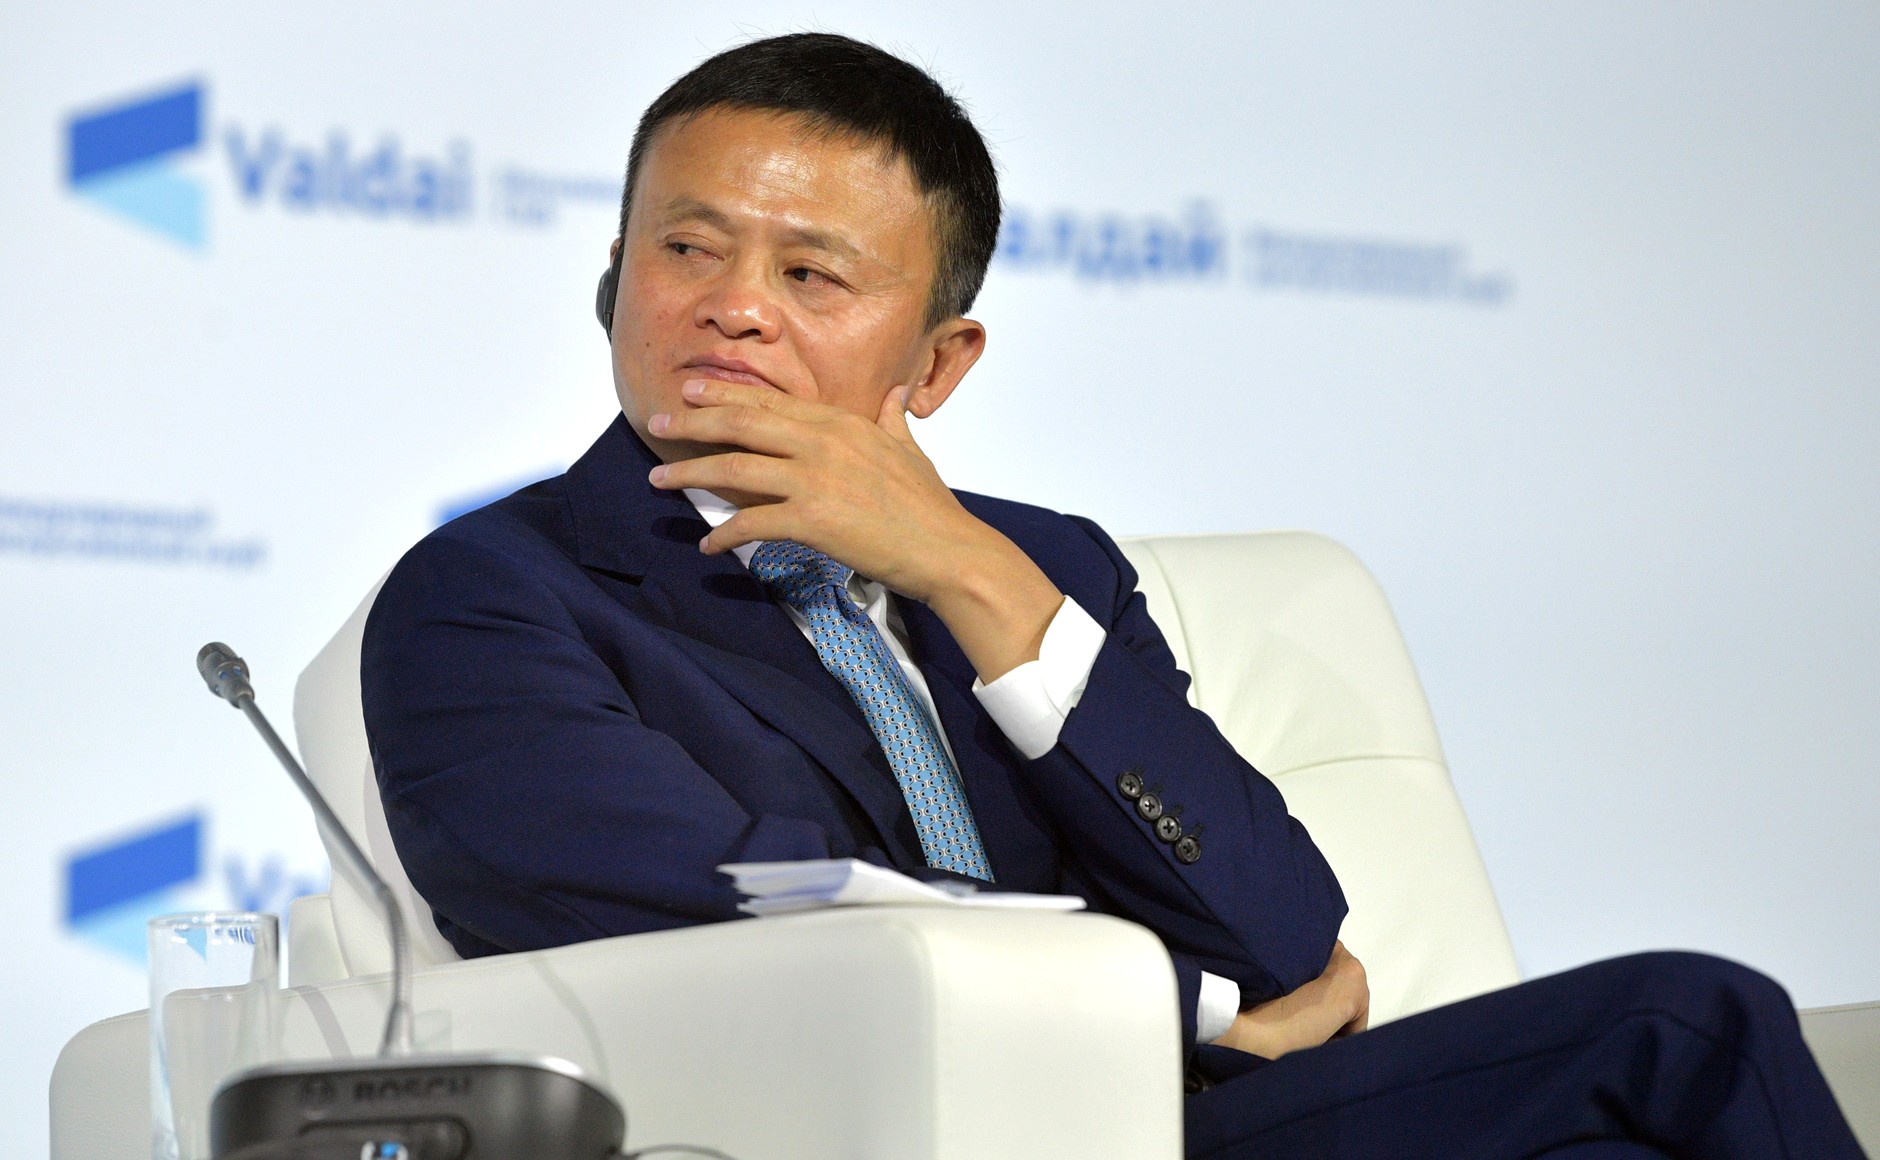 Исполнительный председатель Alibaba Group Джек Ма на заседании Валдайского международного дискуссионного клуба.